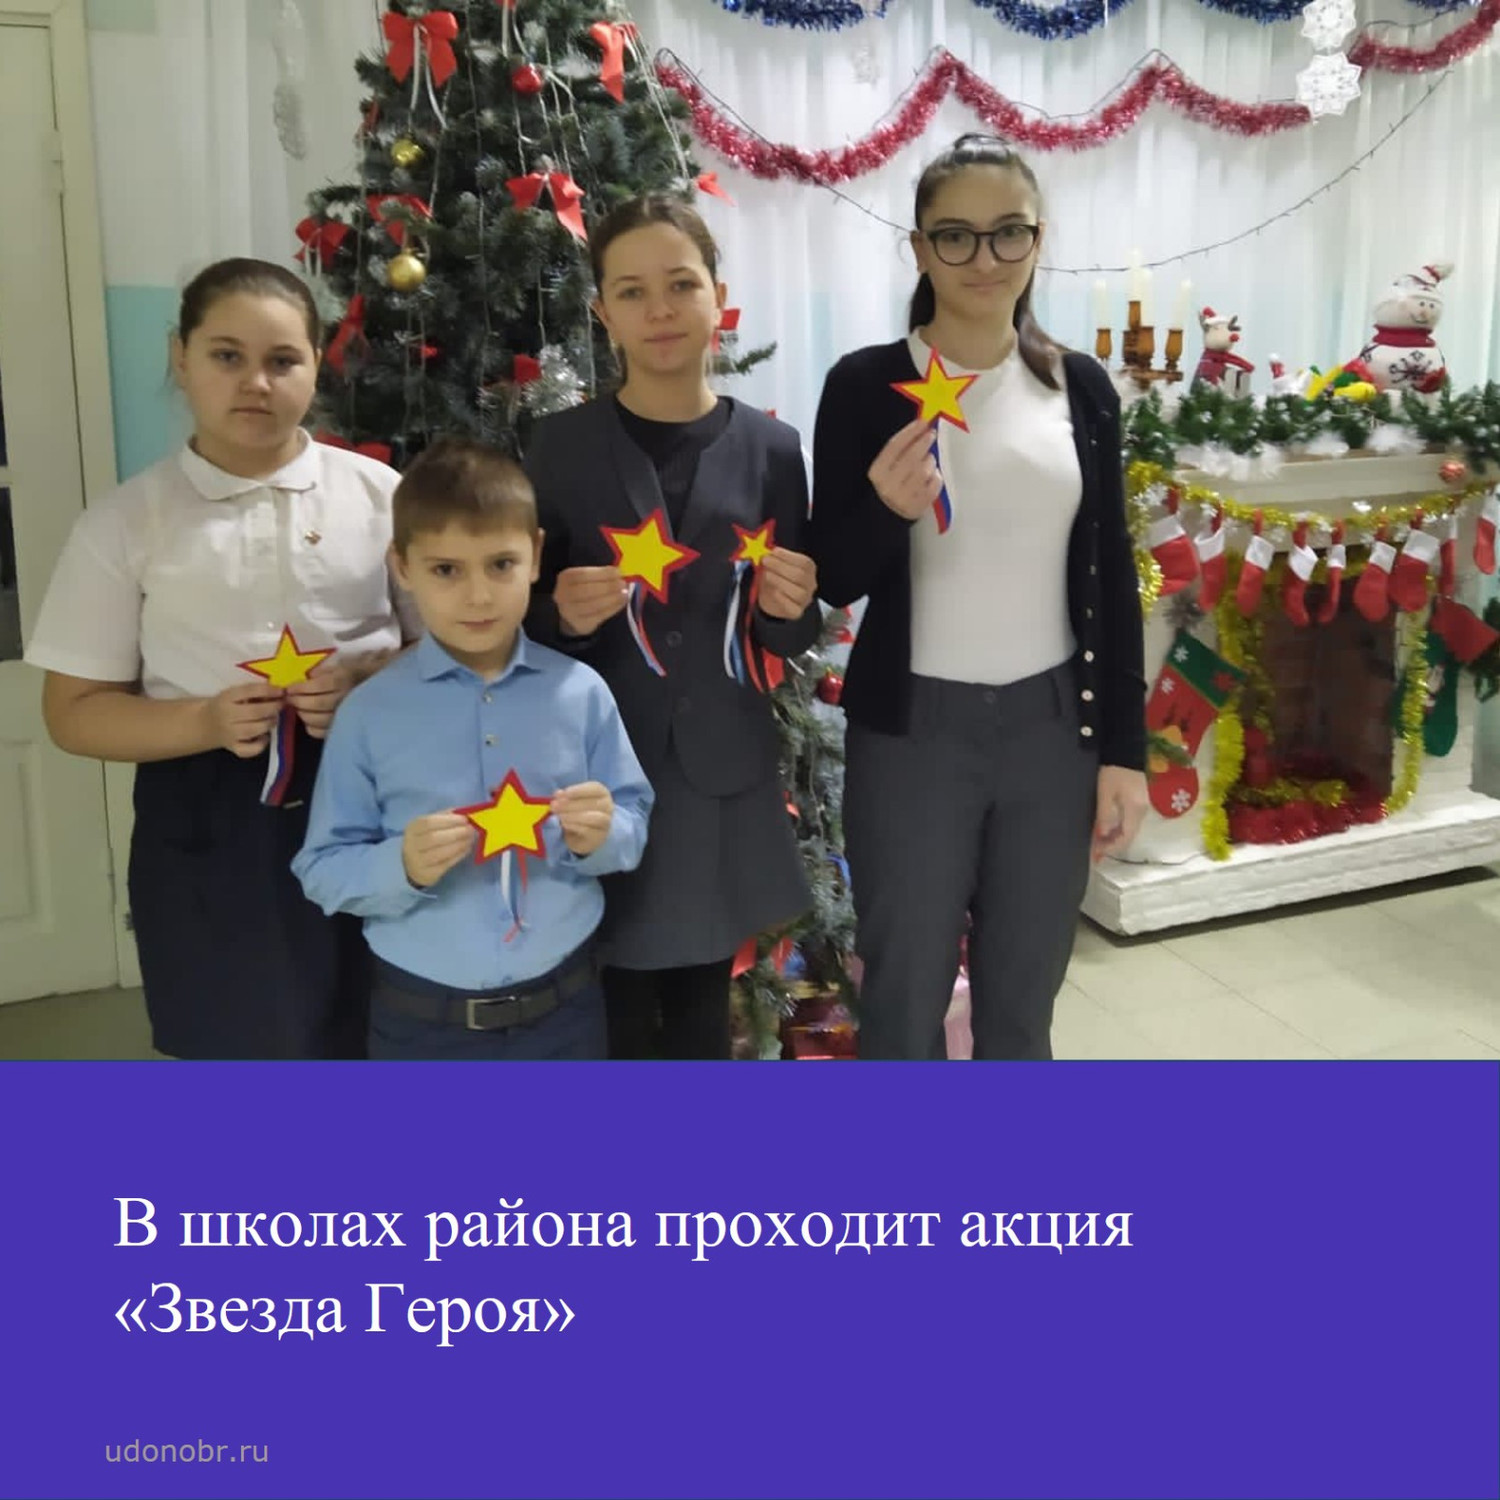 В школах района проходит акция «Звезда Героя»